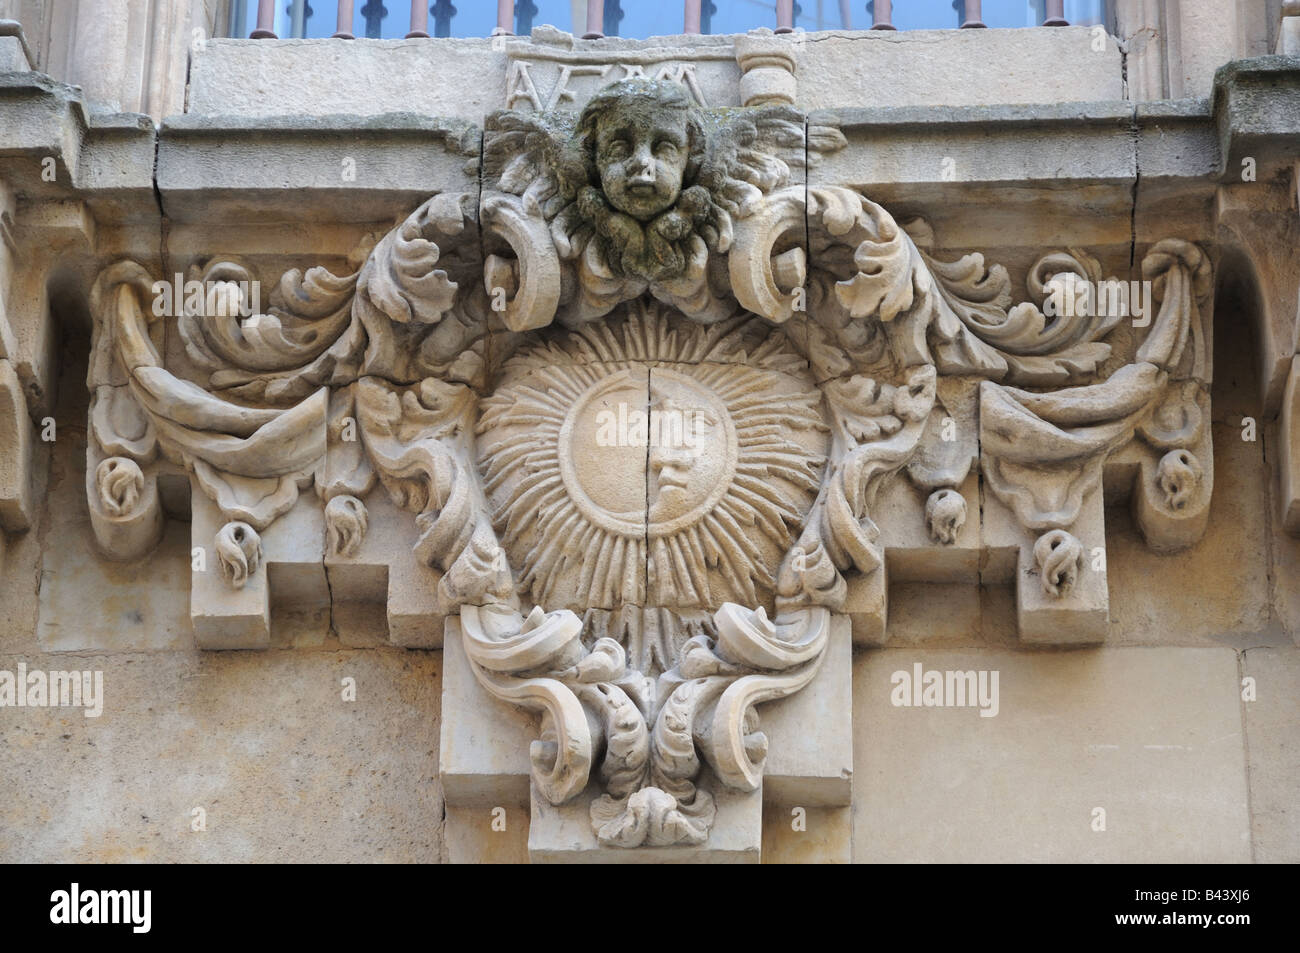 Détail de la décoration de fenêtre Sculpté en pierre avec le soleil et lune représenté avec les anges font face à Salamanque Espagne Banque D'Images